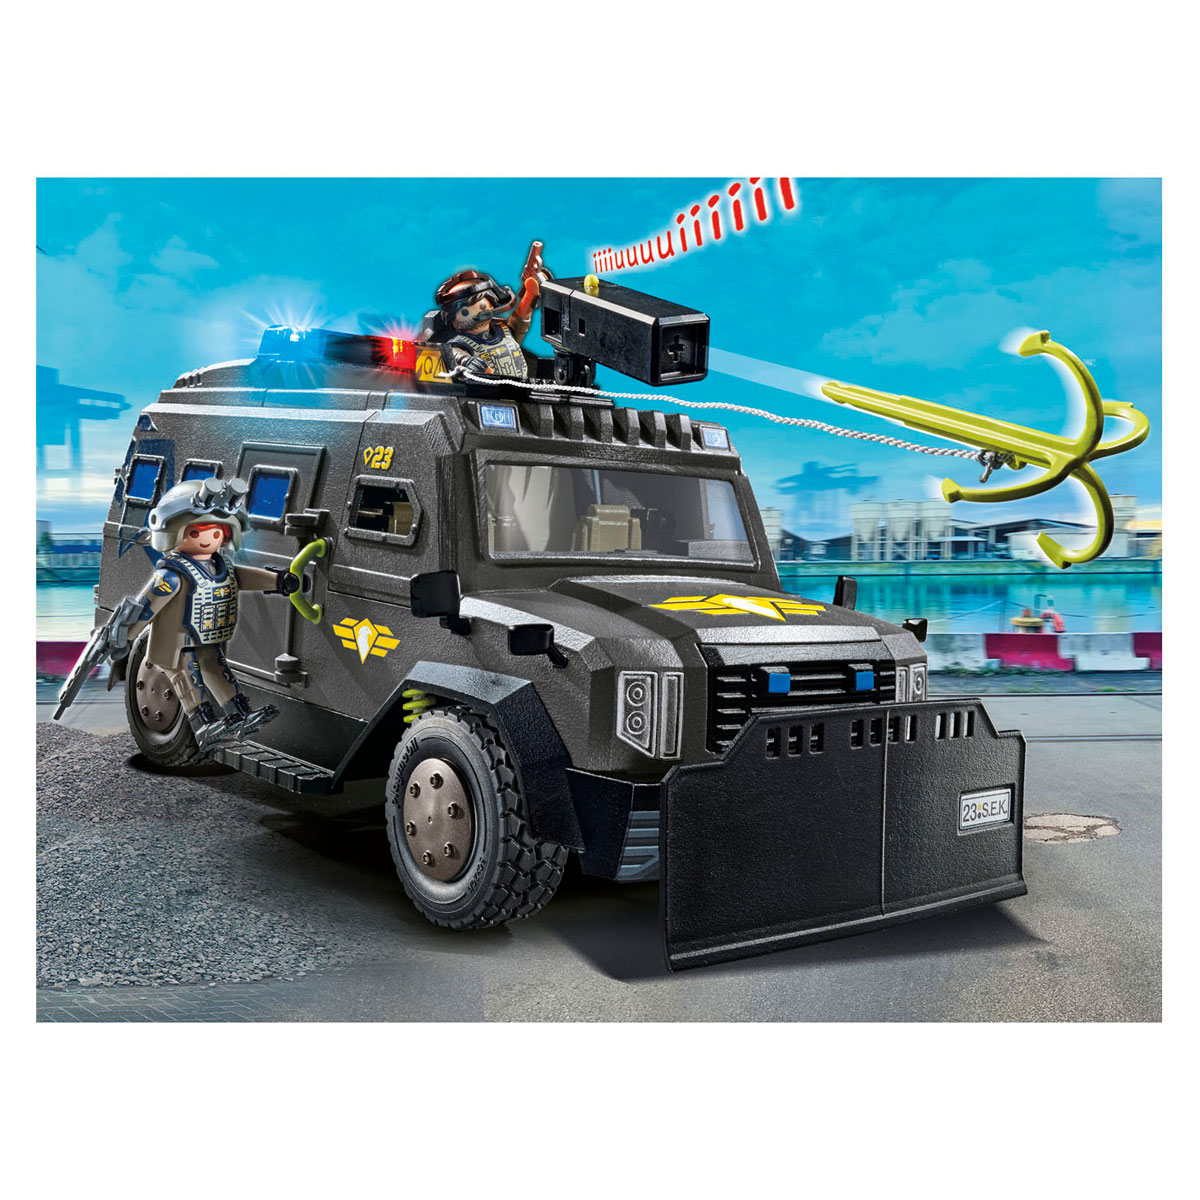 Playmobil City Action SE Geländewagen – 71144